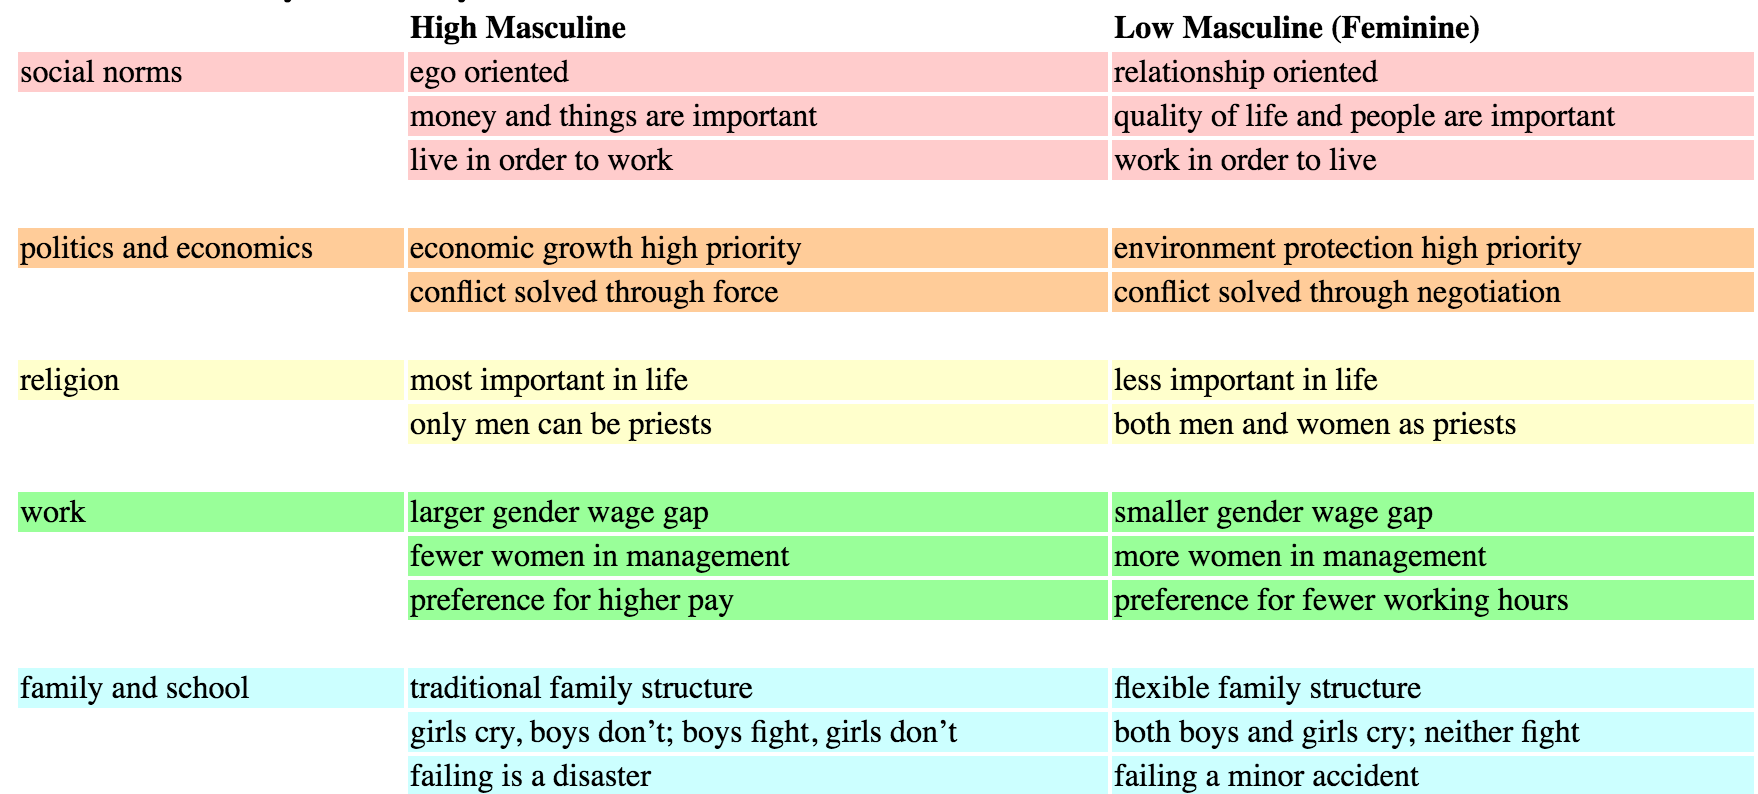 Masculinity vs femininity